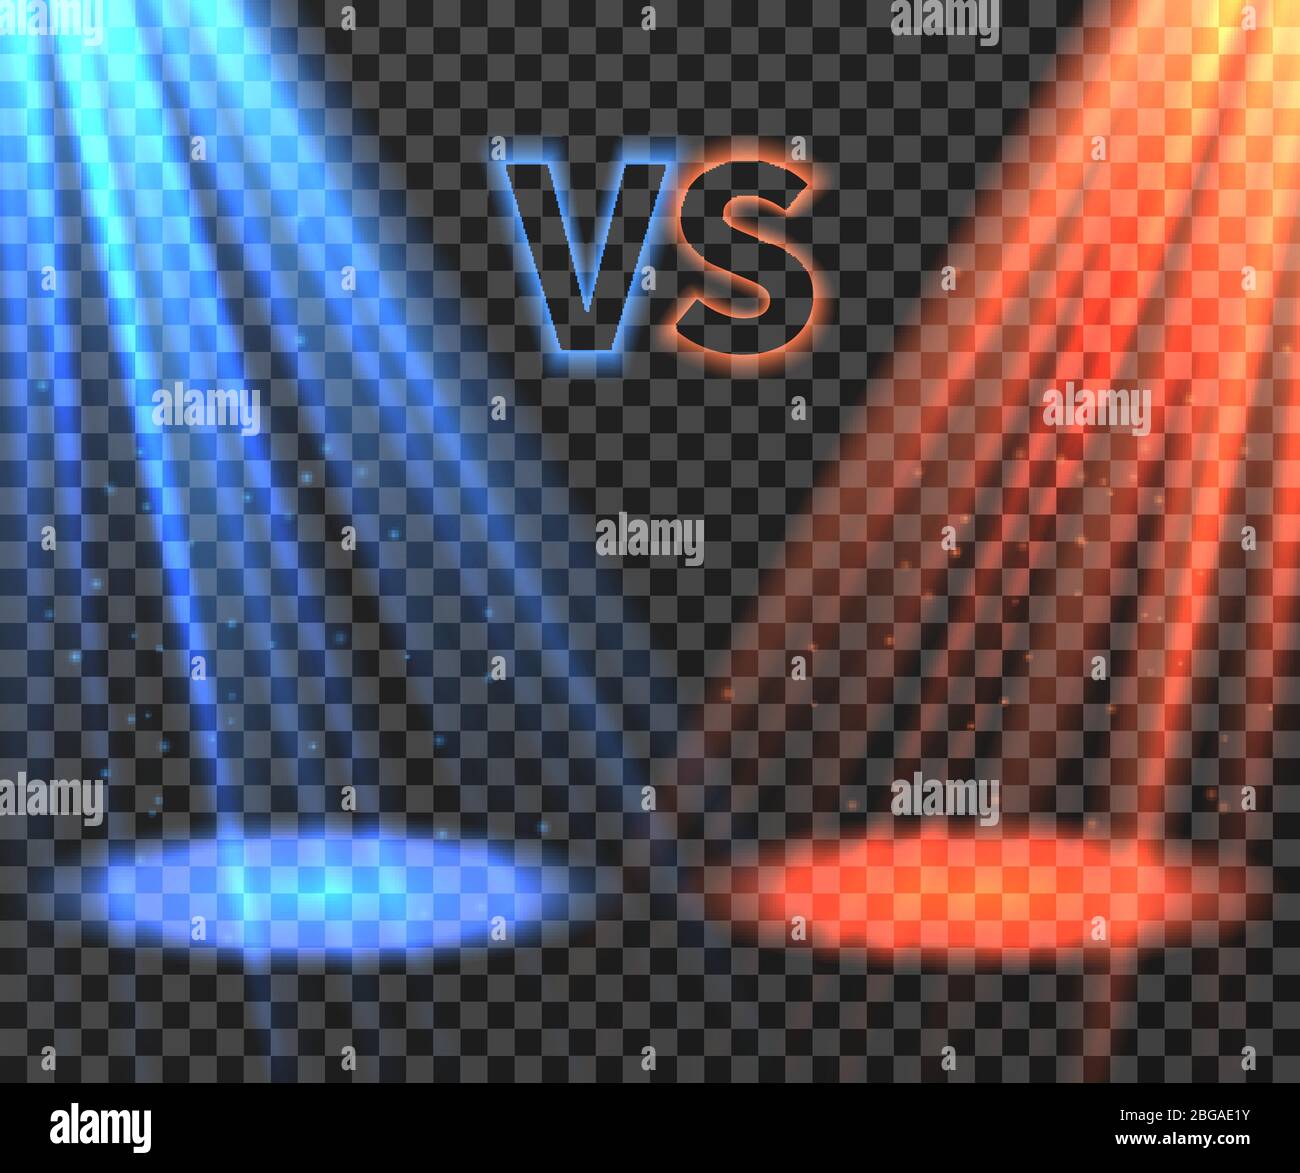 Versus glowing teleport effect on floor vs battle Vector Image